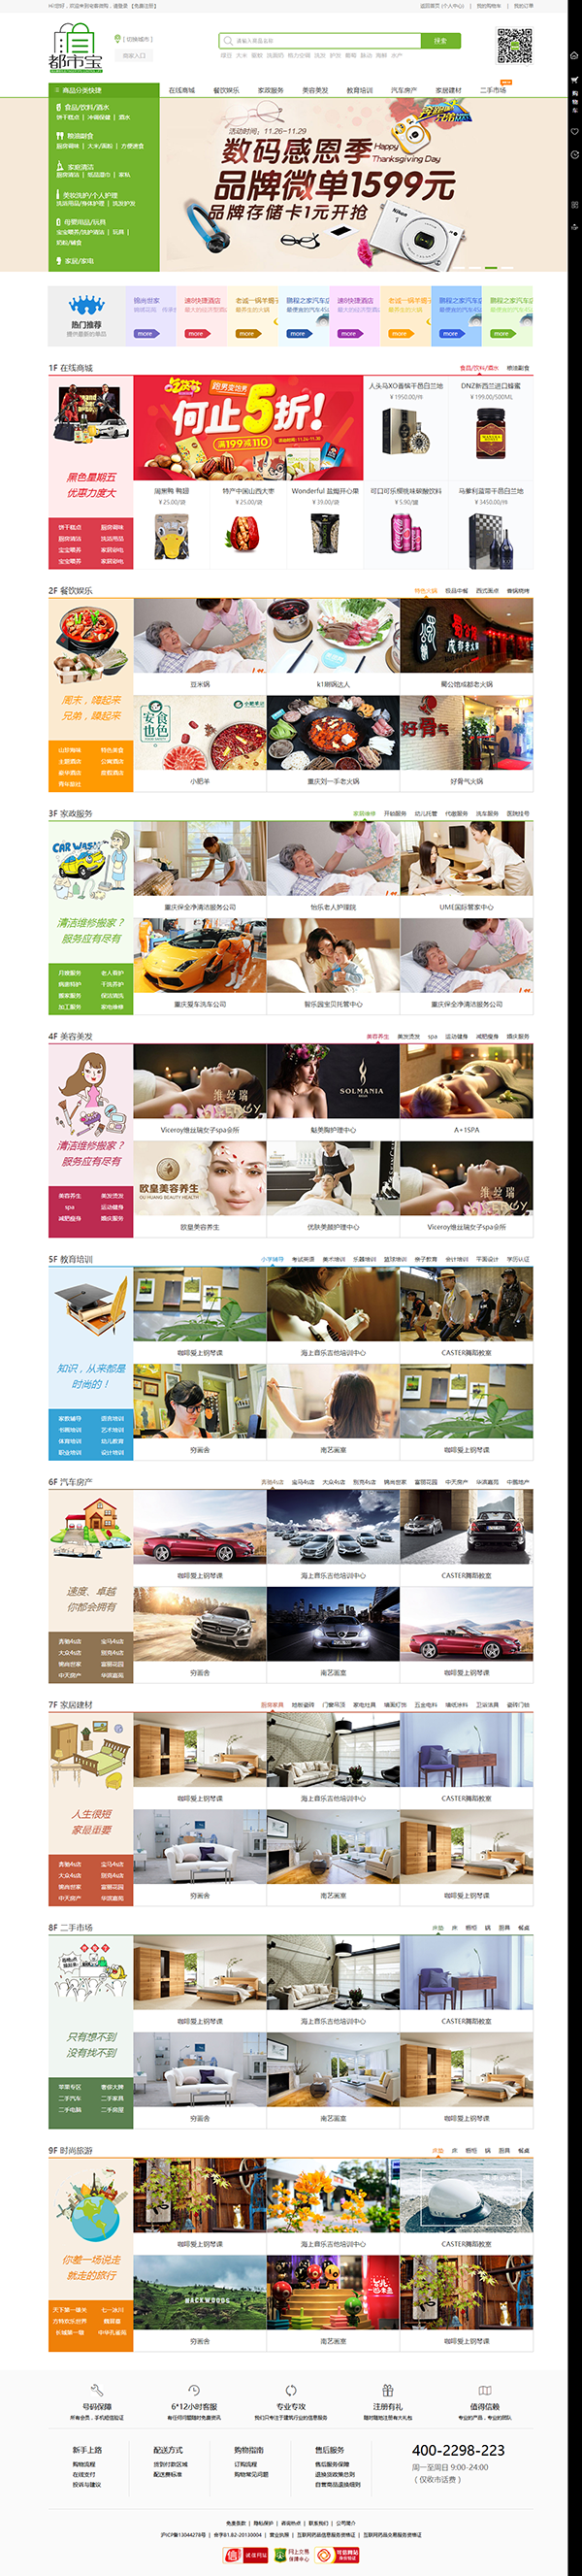 绿色的生活服务平台购物商城模板html源码